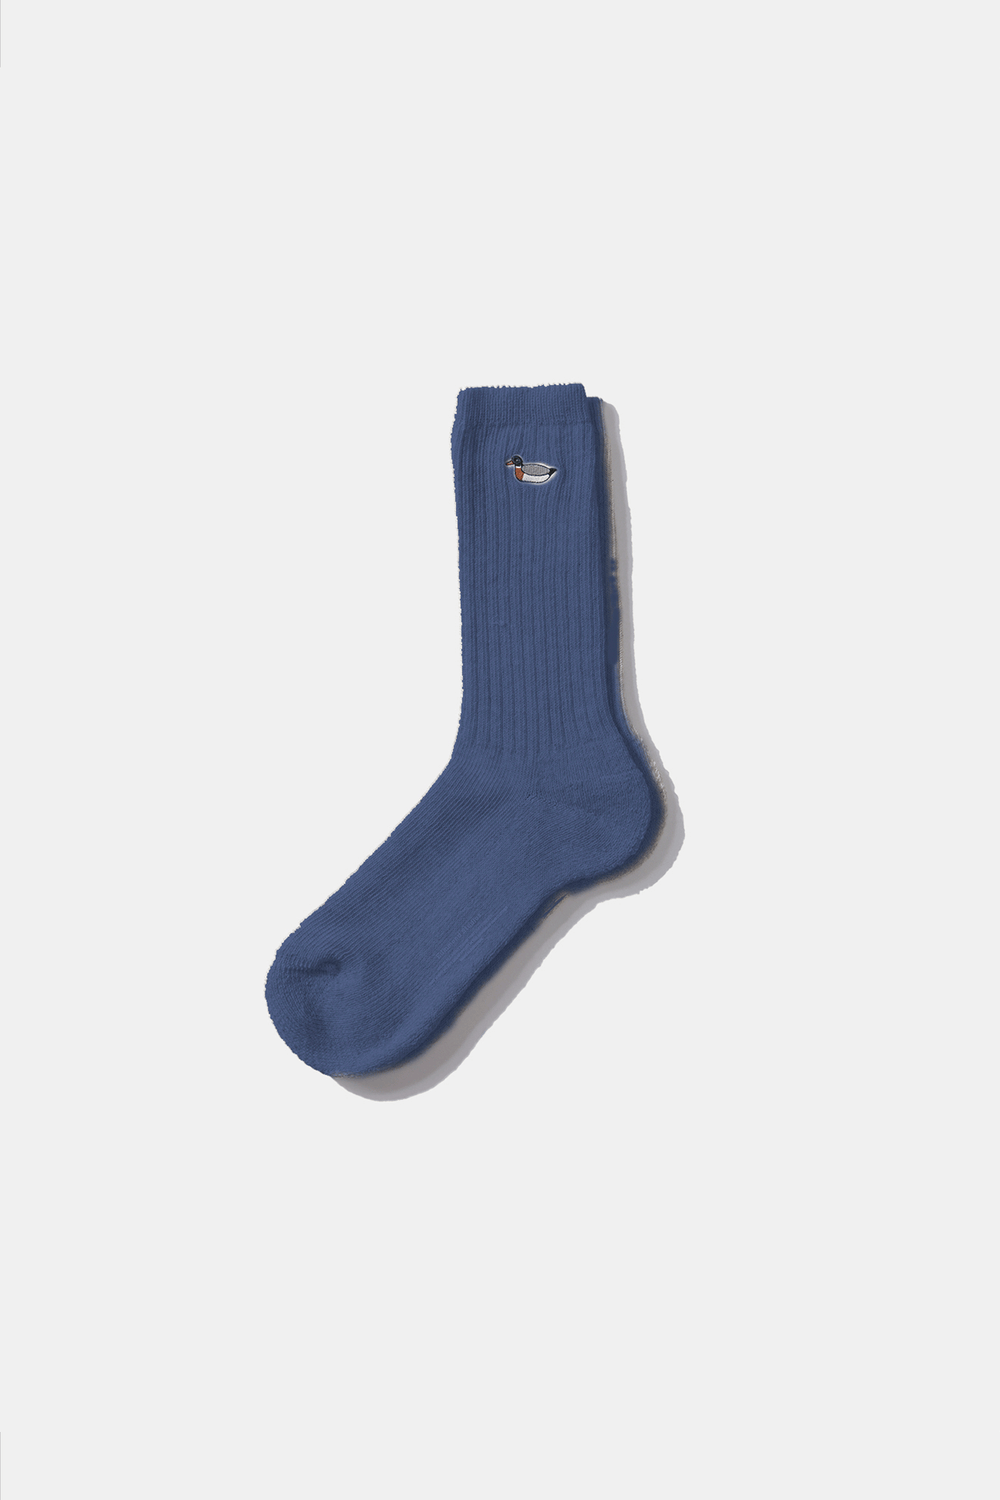 Blue Duck Socks Socks